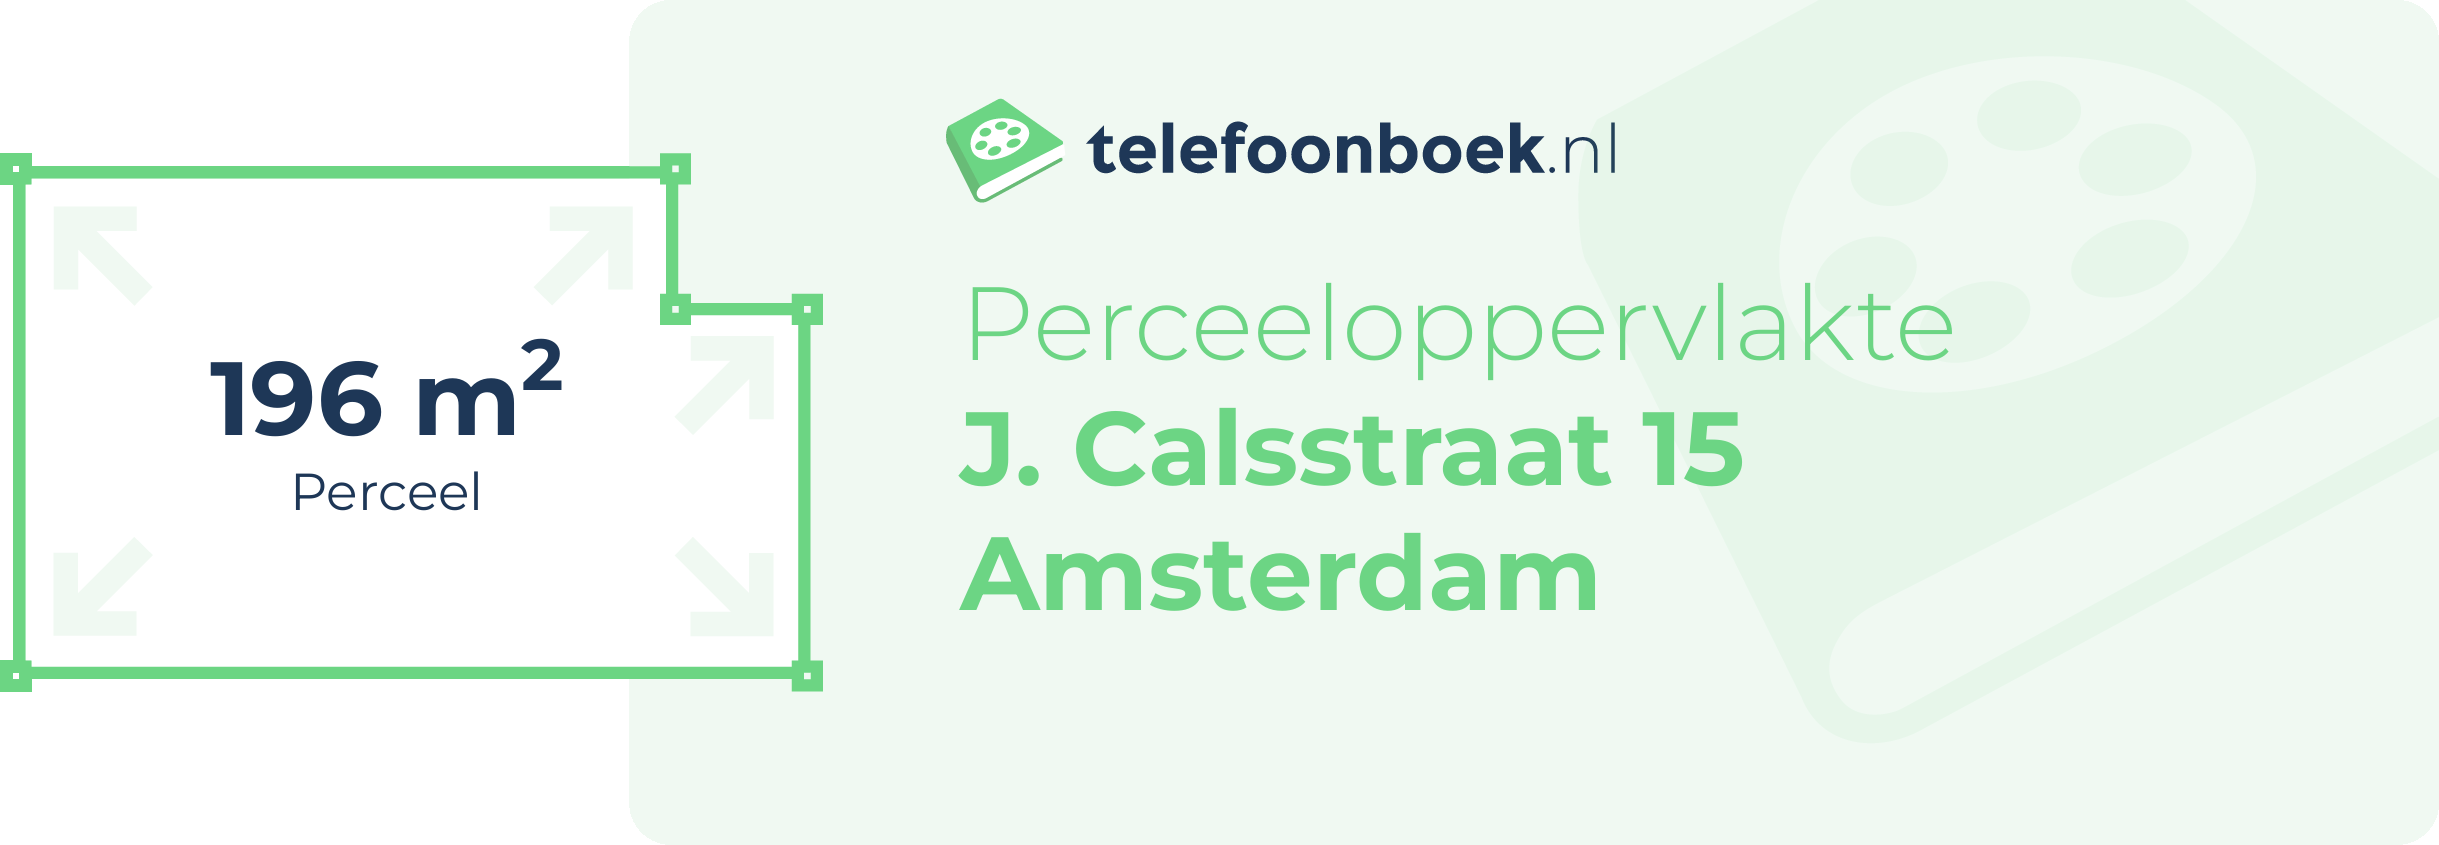 Perceeloppervlakte J. Calsstraat 15 Amsterdam